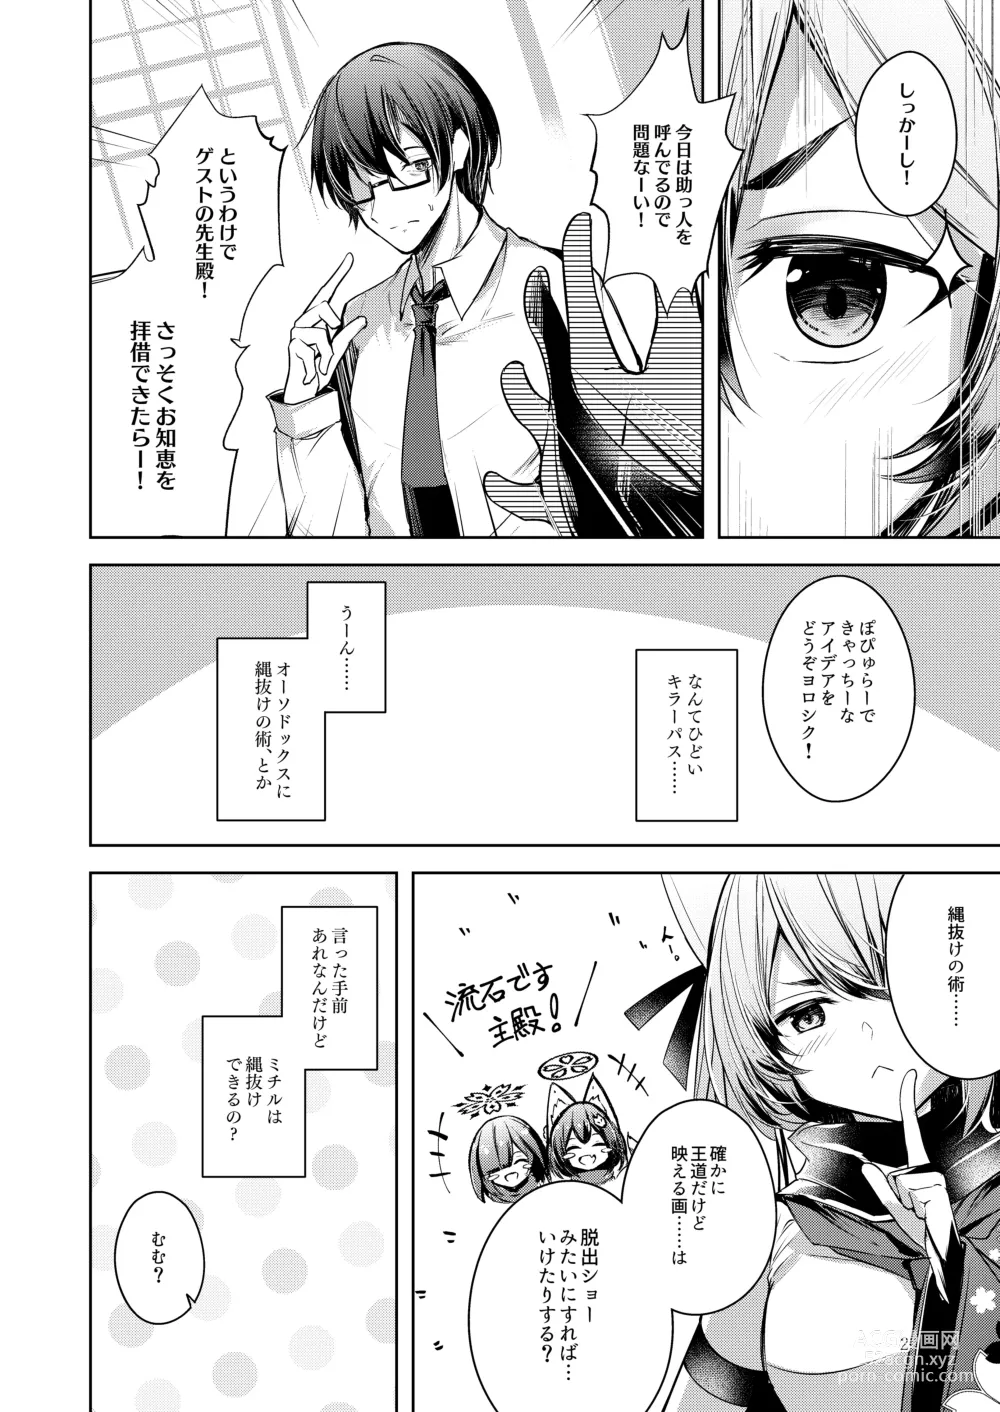 Page 3 of doujinshi Shinobi Koishitau 2